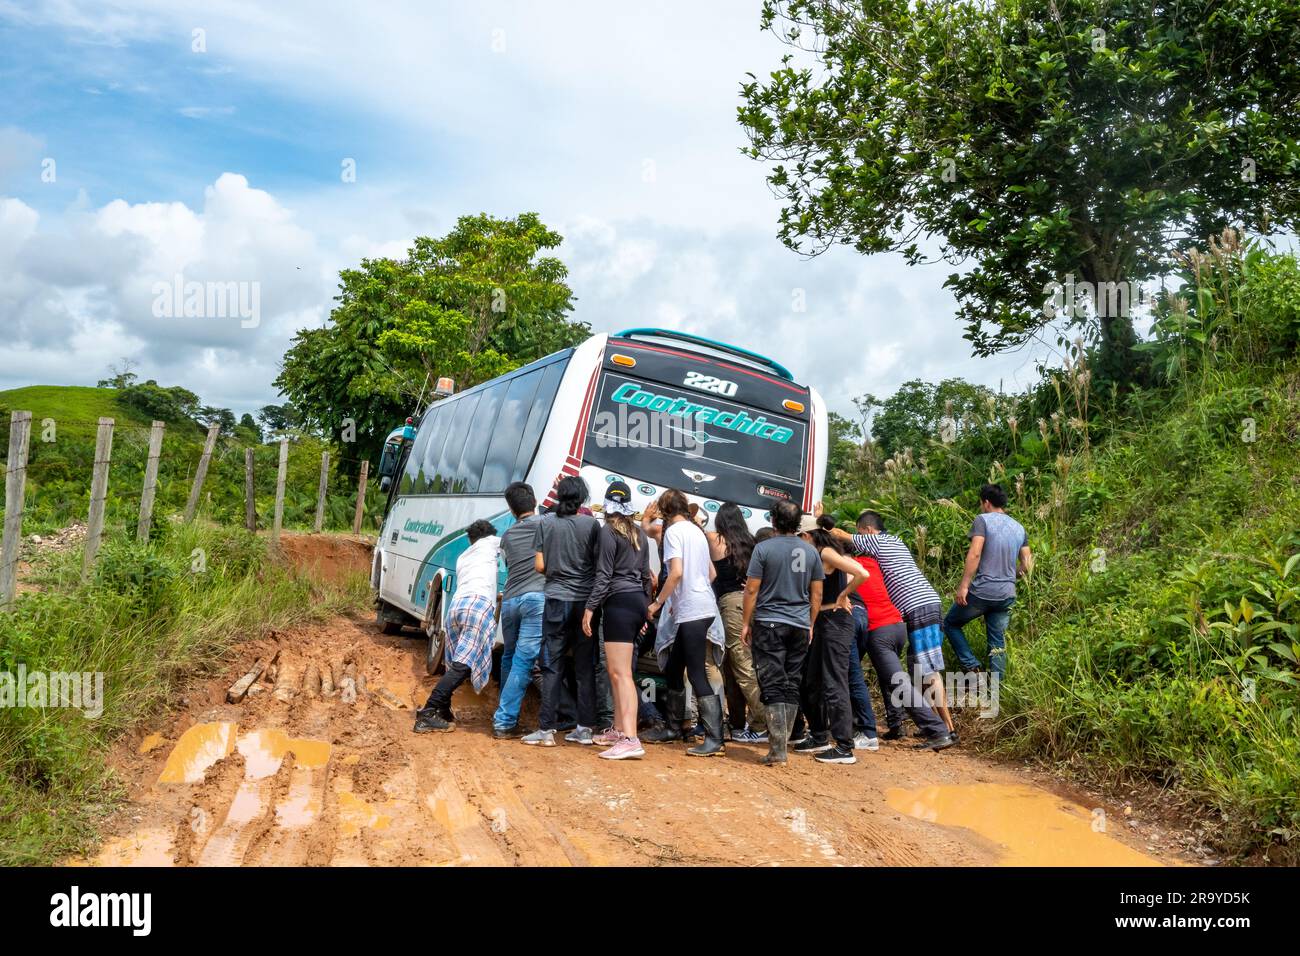 Eine Gruppe junger Leute, die einen Bus schubsen, der auf einer schlammigen Straße feststeckt. Kolumbien, Südamerika. Stockfoto